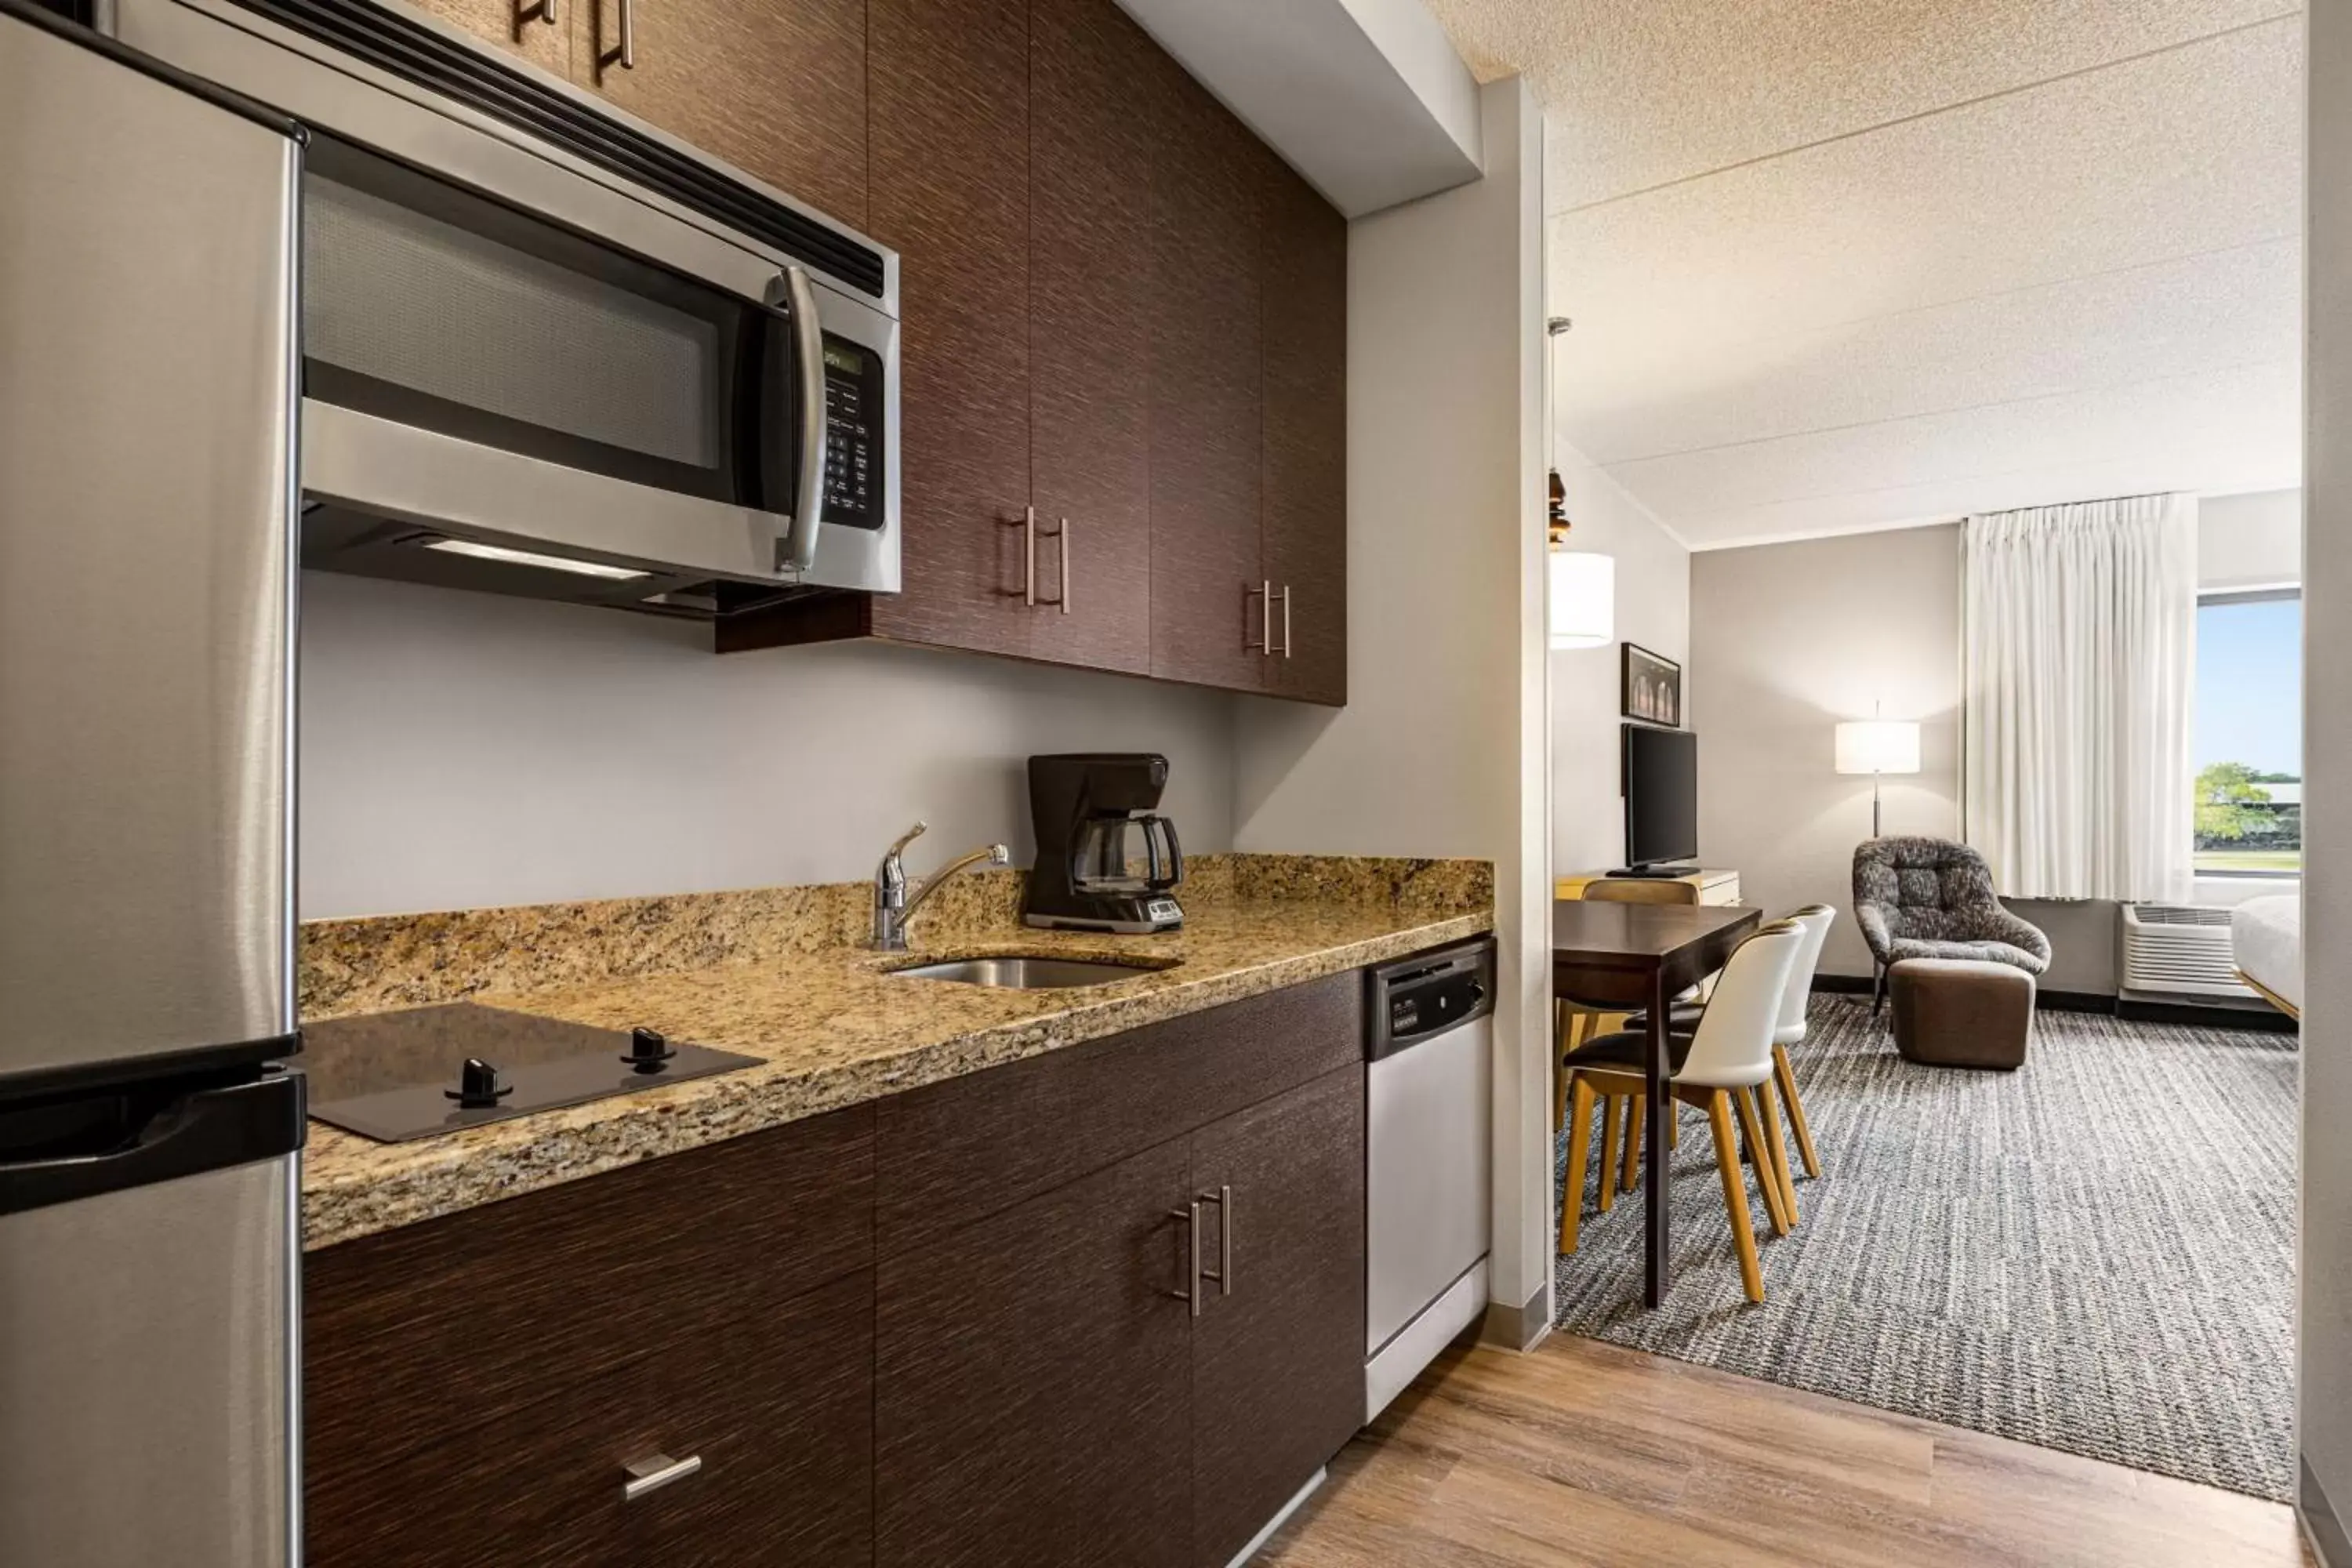 Kitchen or kitchenette, Kitchen/Kitchenette in TownePlace Suites by Marriott Harrisburg West/Mechanicsburg